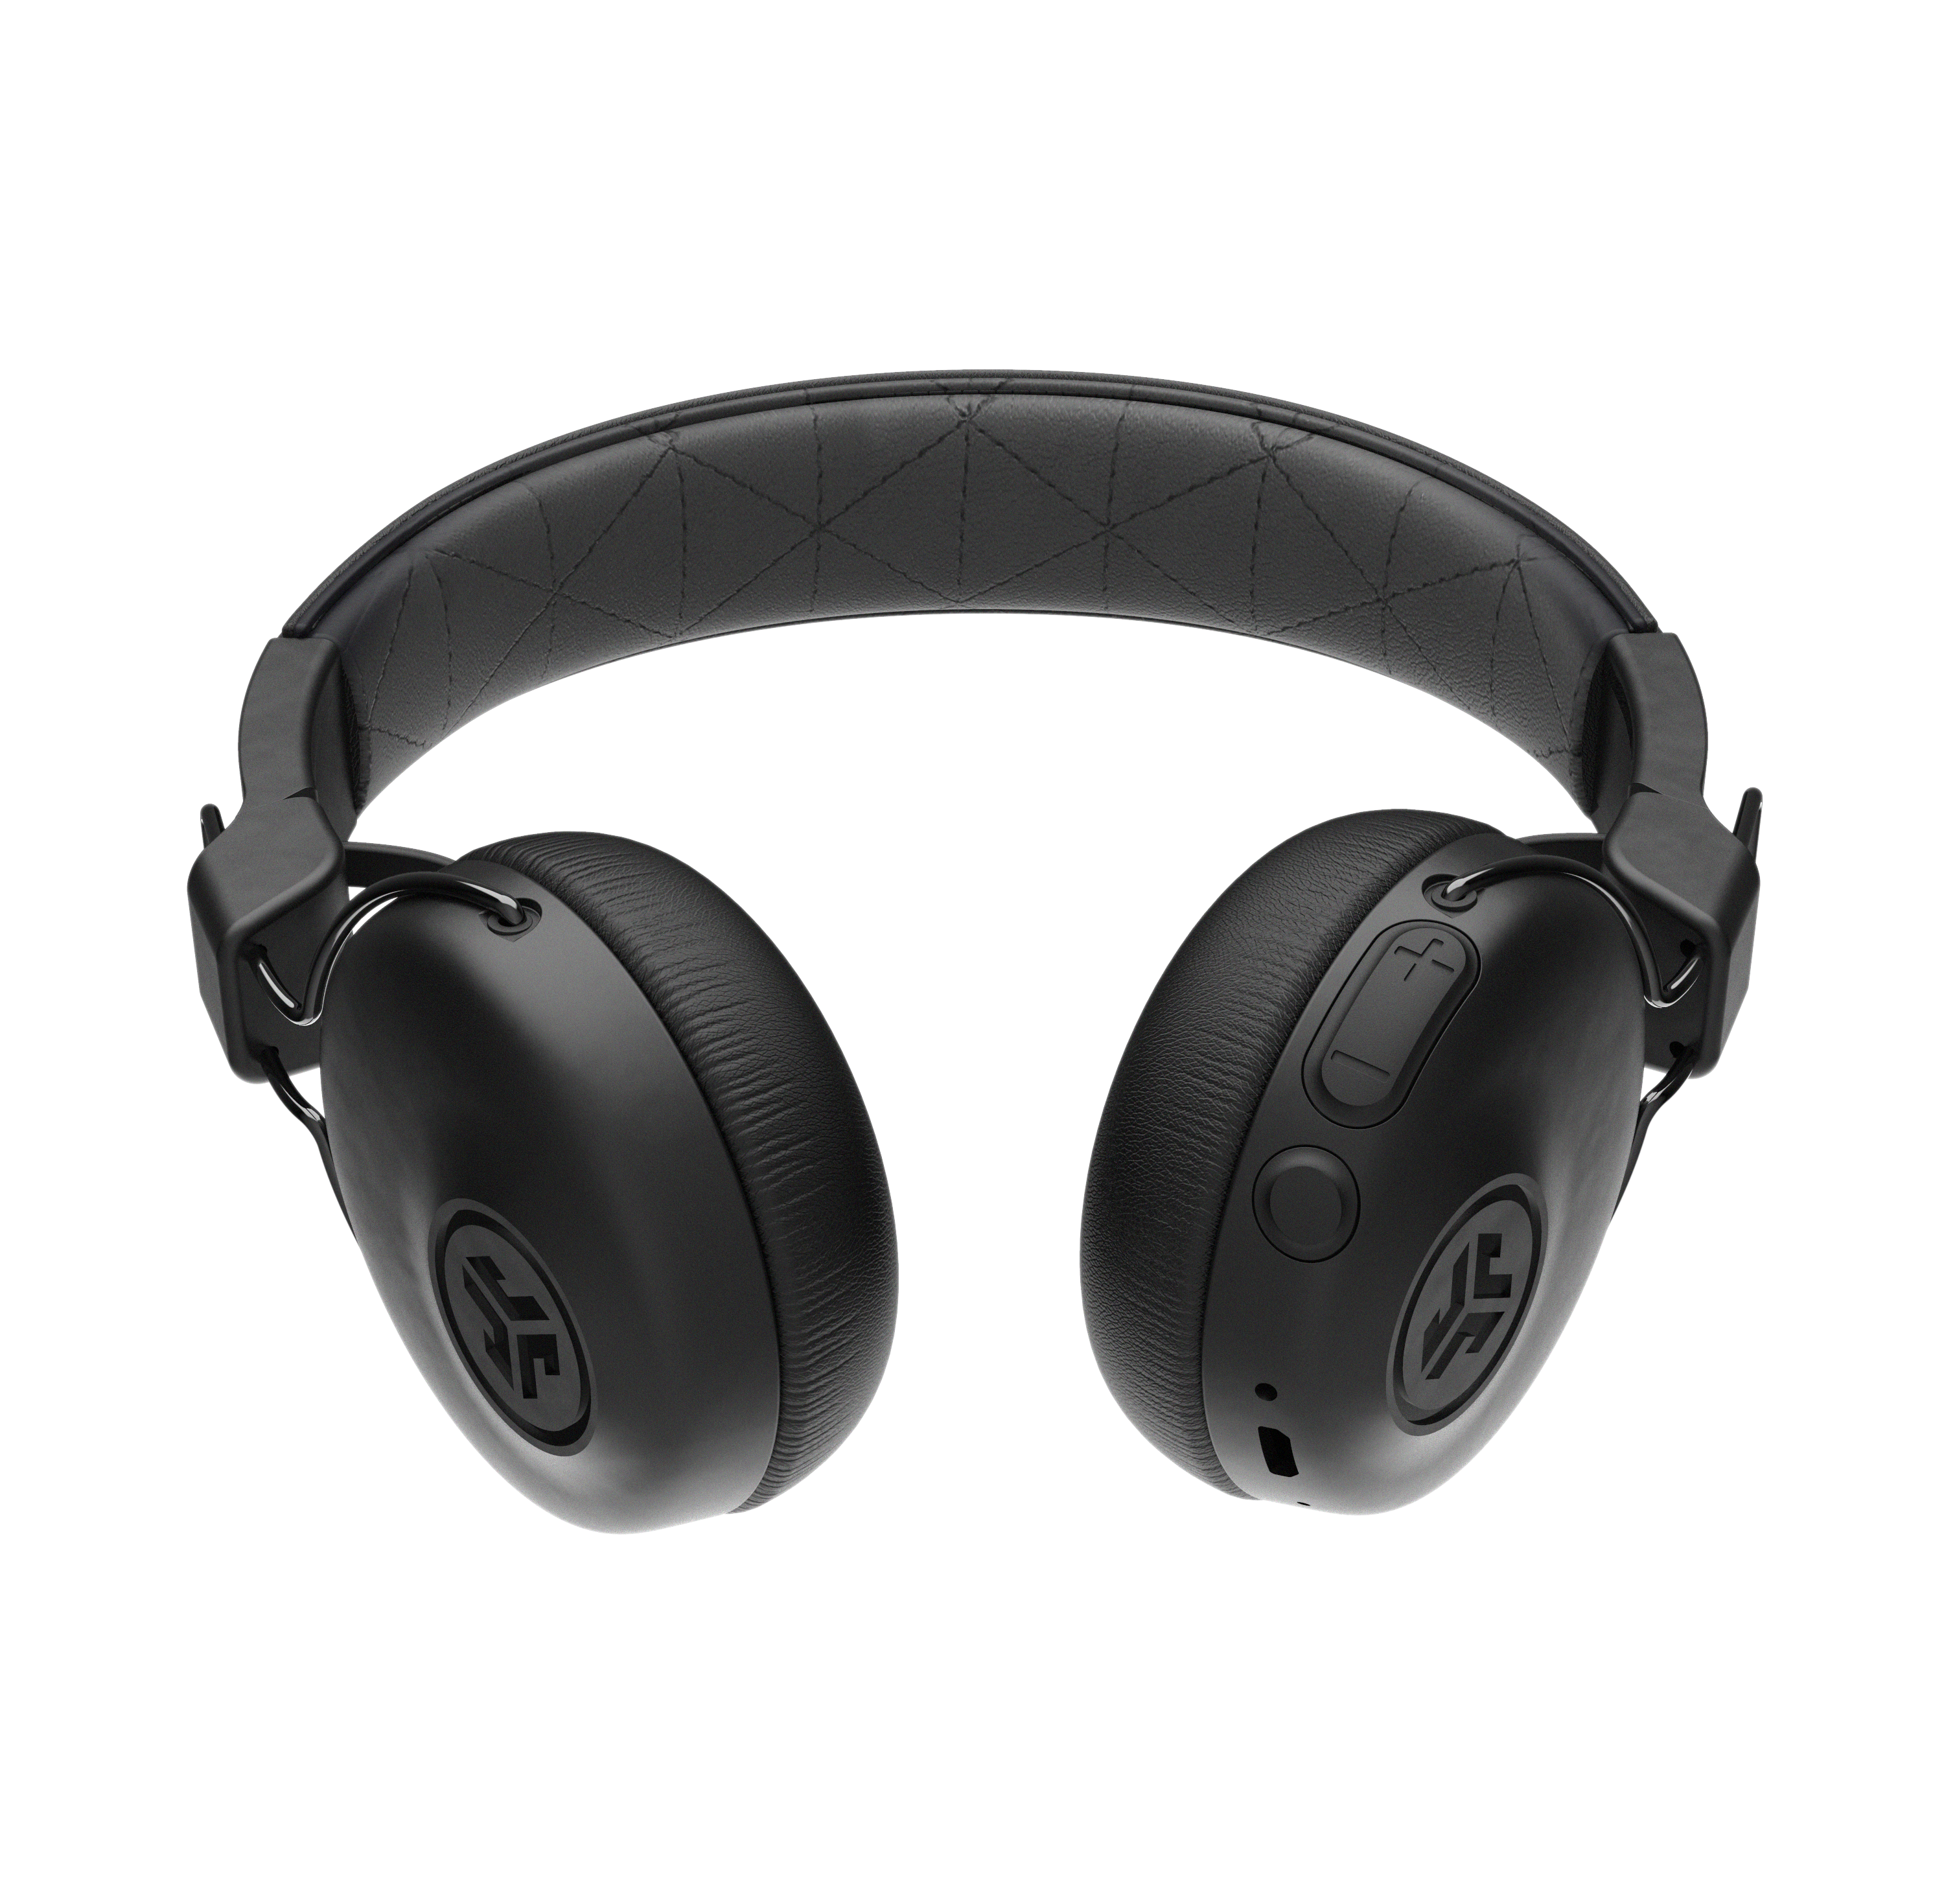 Studio Bluetooth Wireless On-Ear Headphones in black